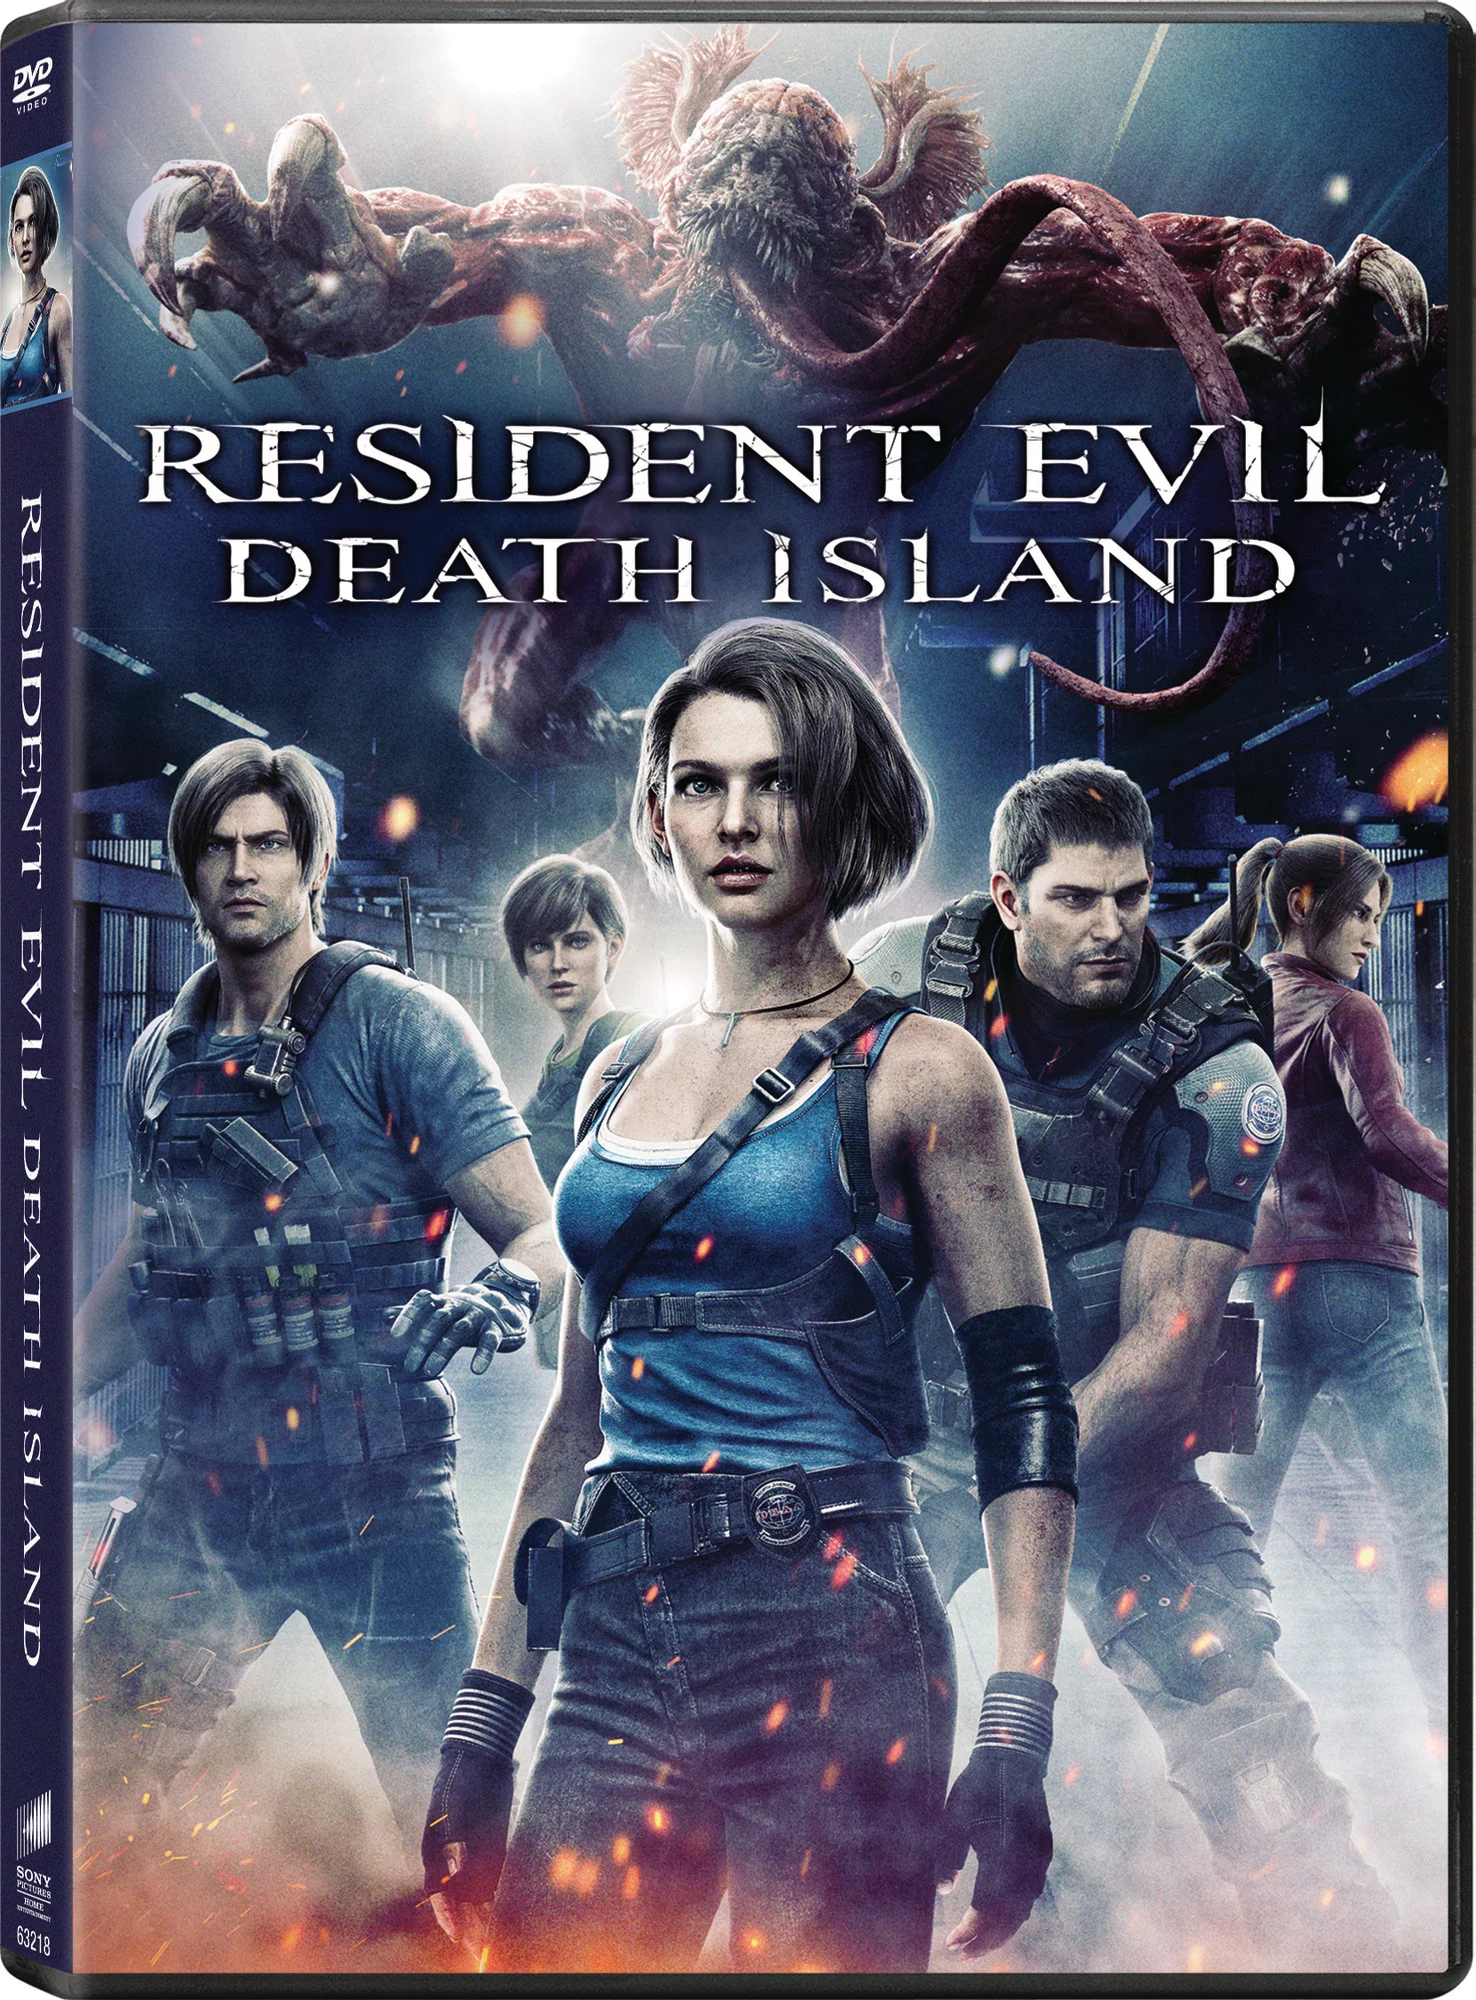 Resident Evil - Wikipedia